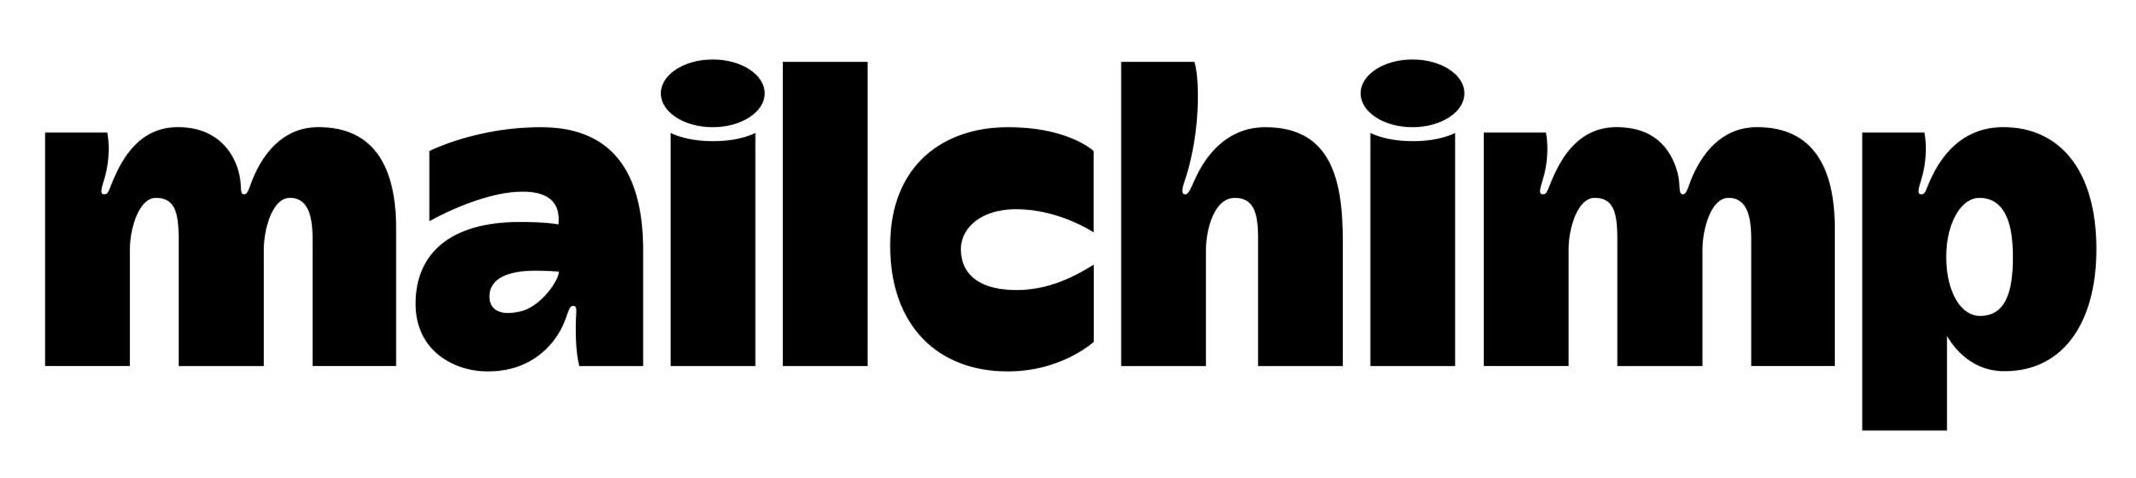 Trademark Logo MAILCHIMP